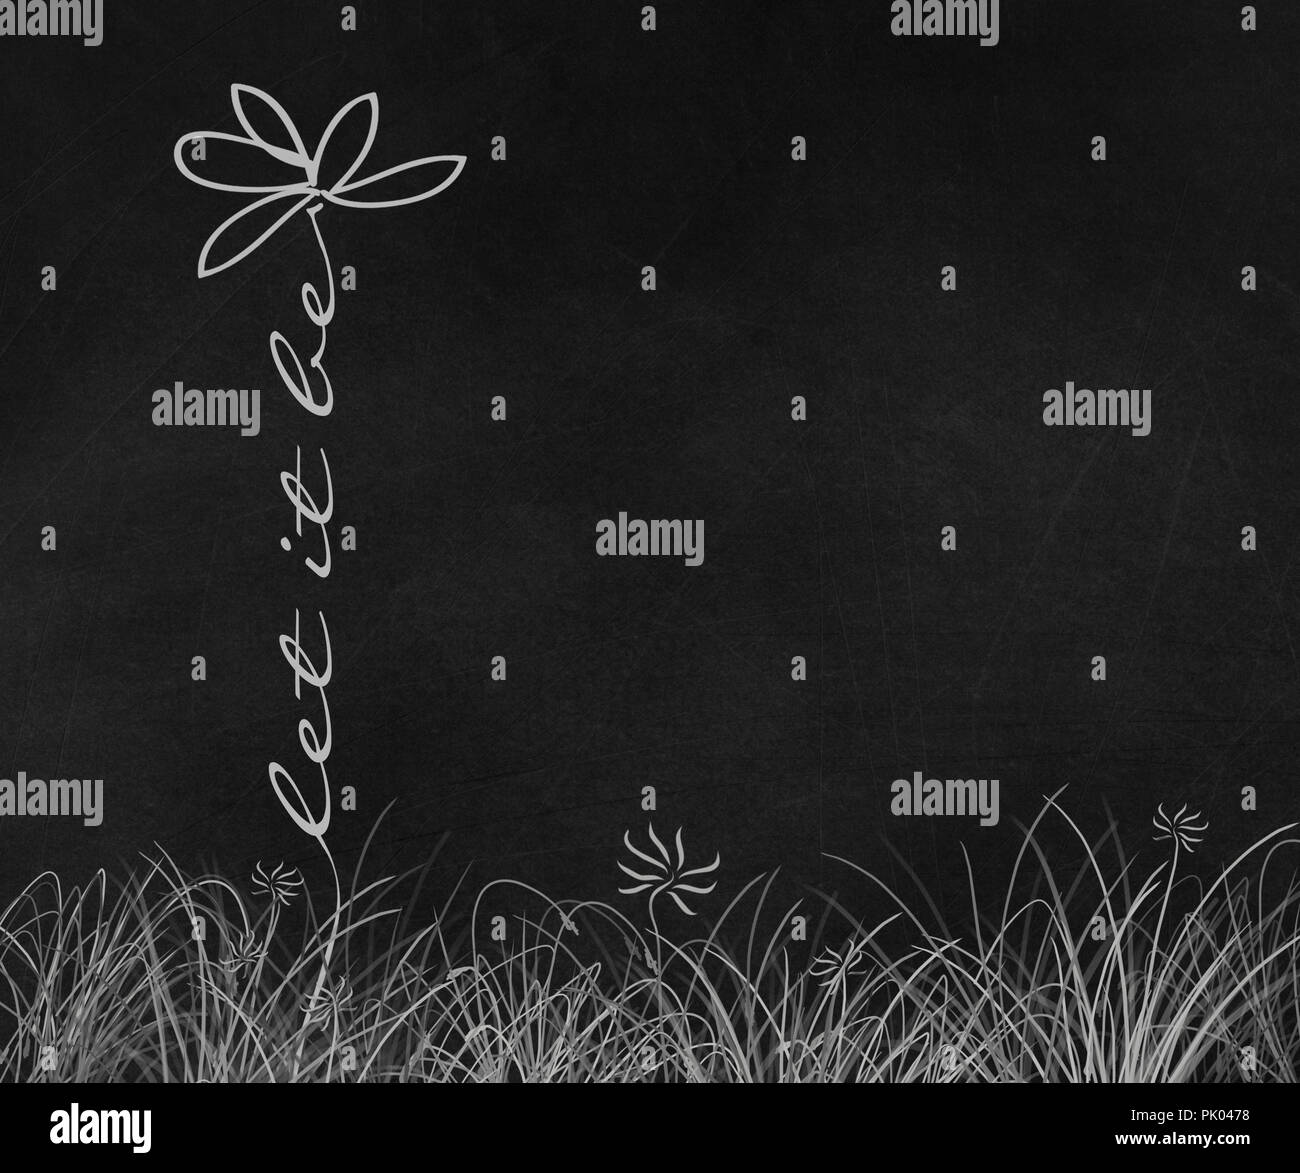 Daisy Flower Abbildung mit Let it be Phrase Stem im Gras auf schwarz Schwarzes Brett Stockfoto